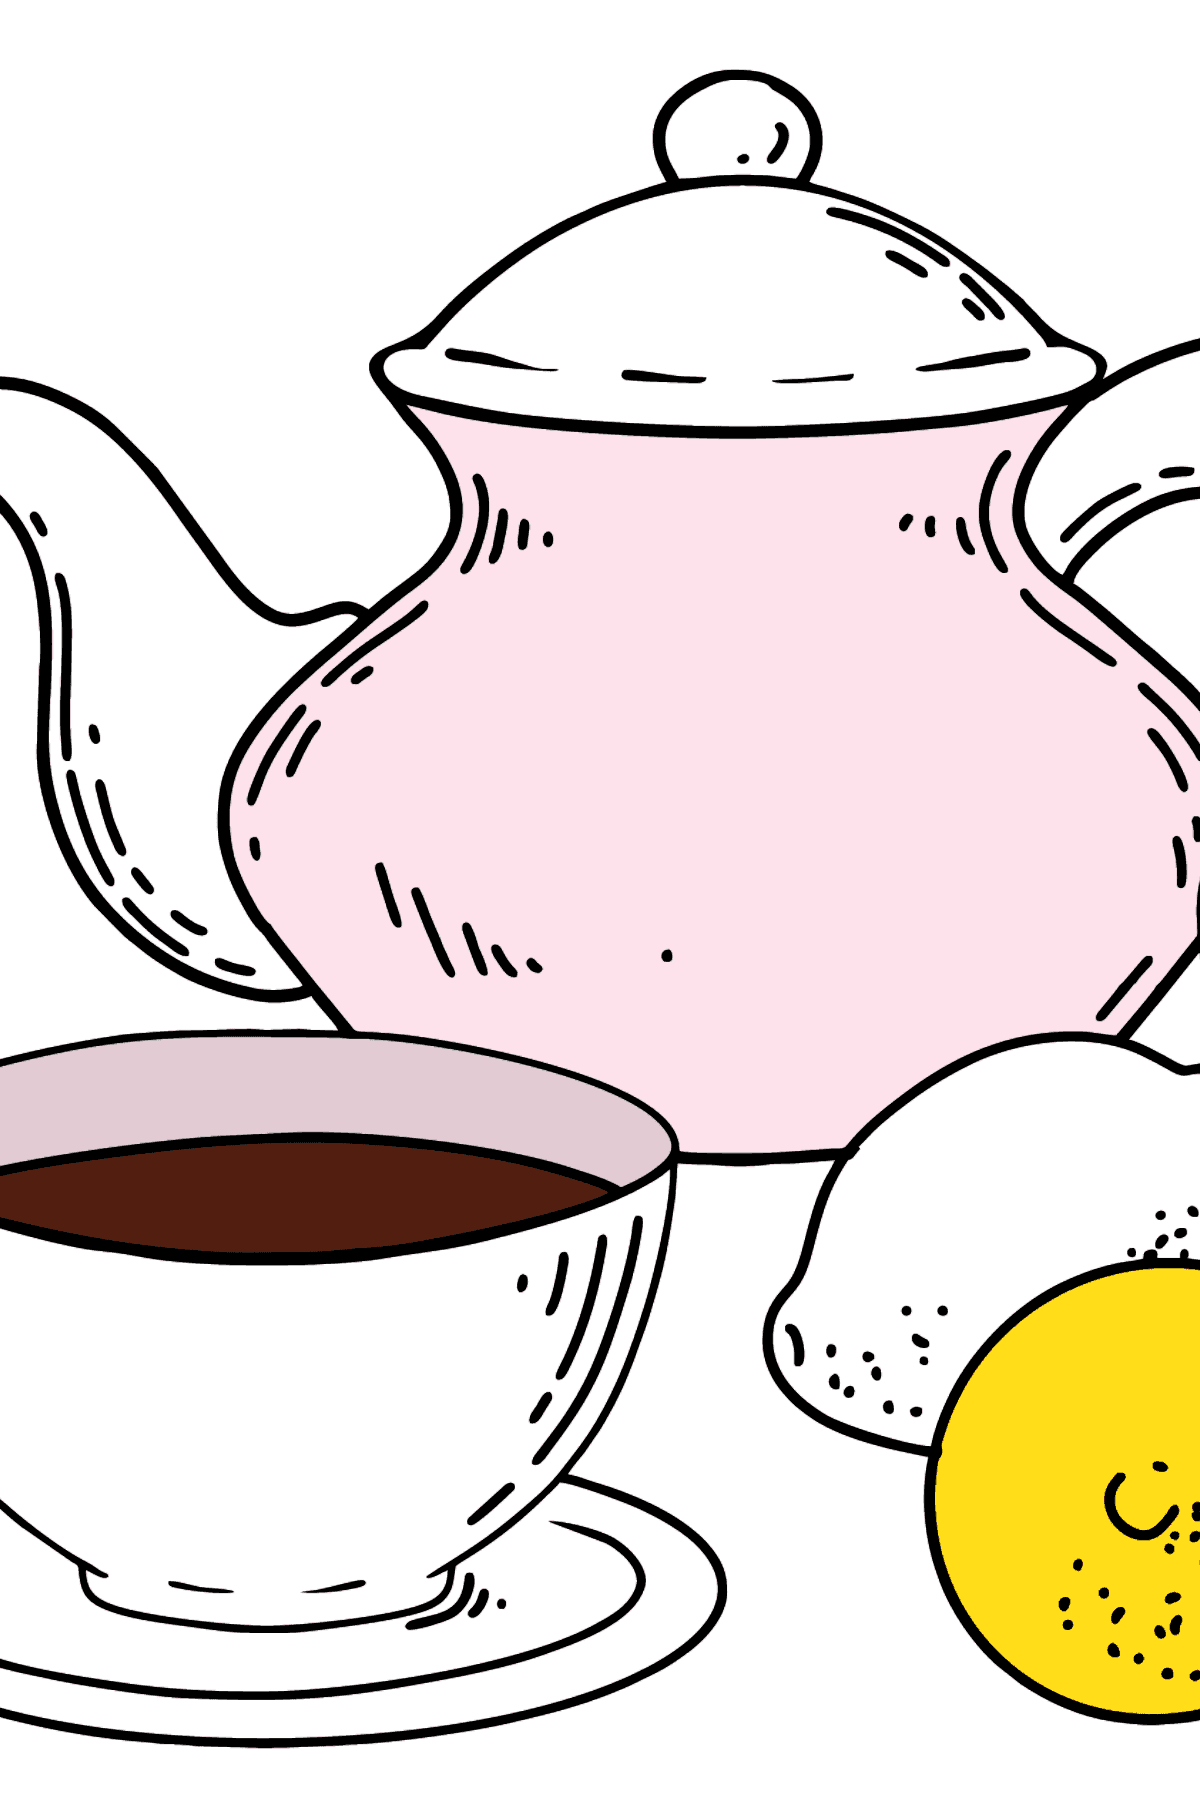 Desenho de xícara de chá e bule para colorir - Imagens para Colorir para Crianças